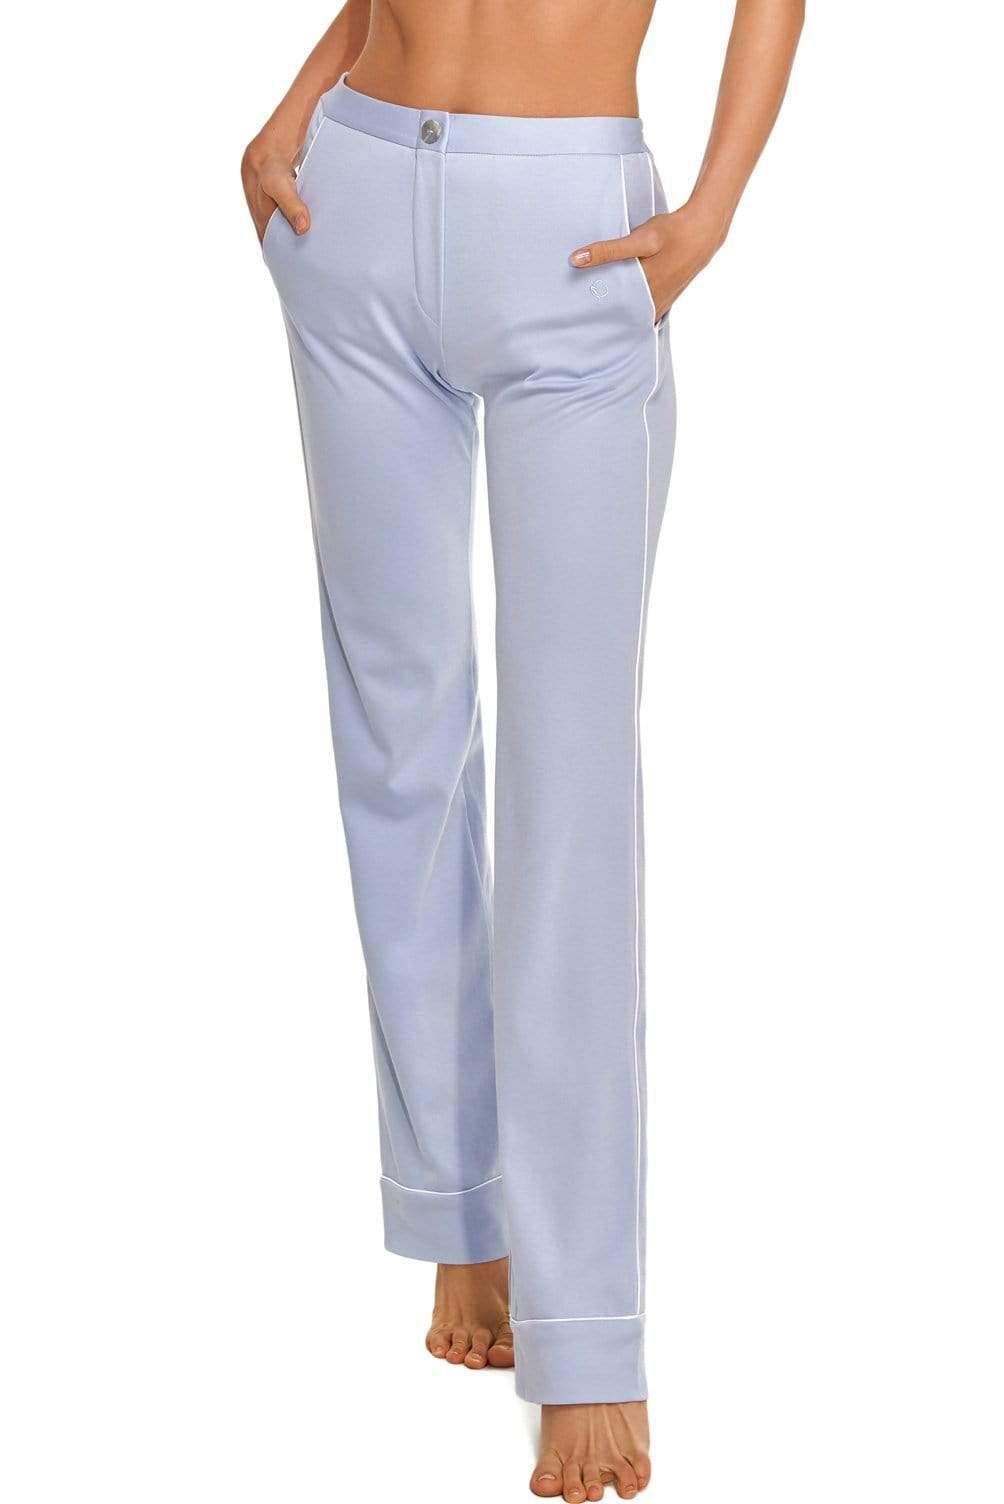 Cotton Beige Color Women's Slim Fit Plain Trousers at Rs 190/piece in Jaipur